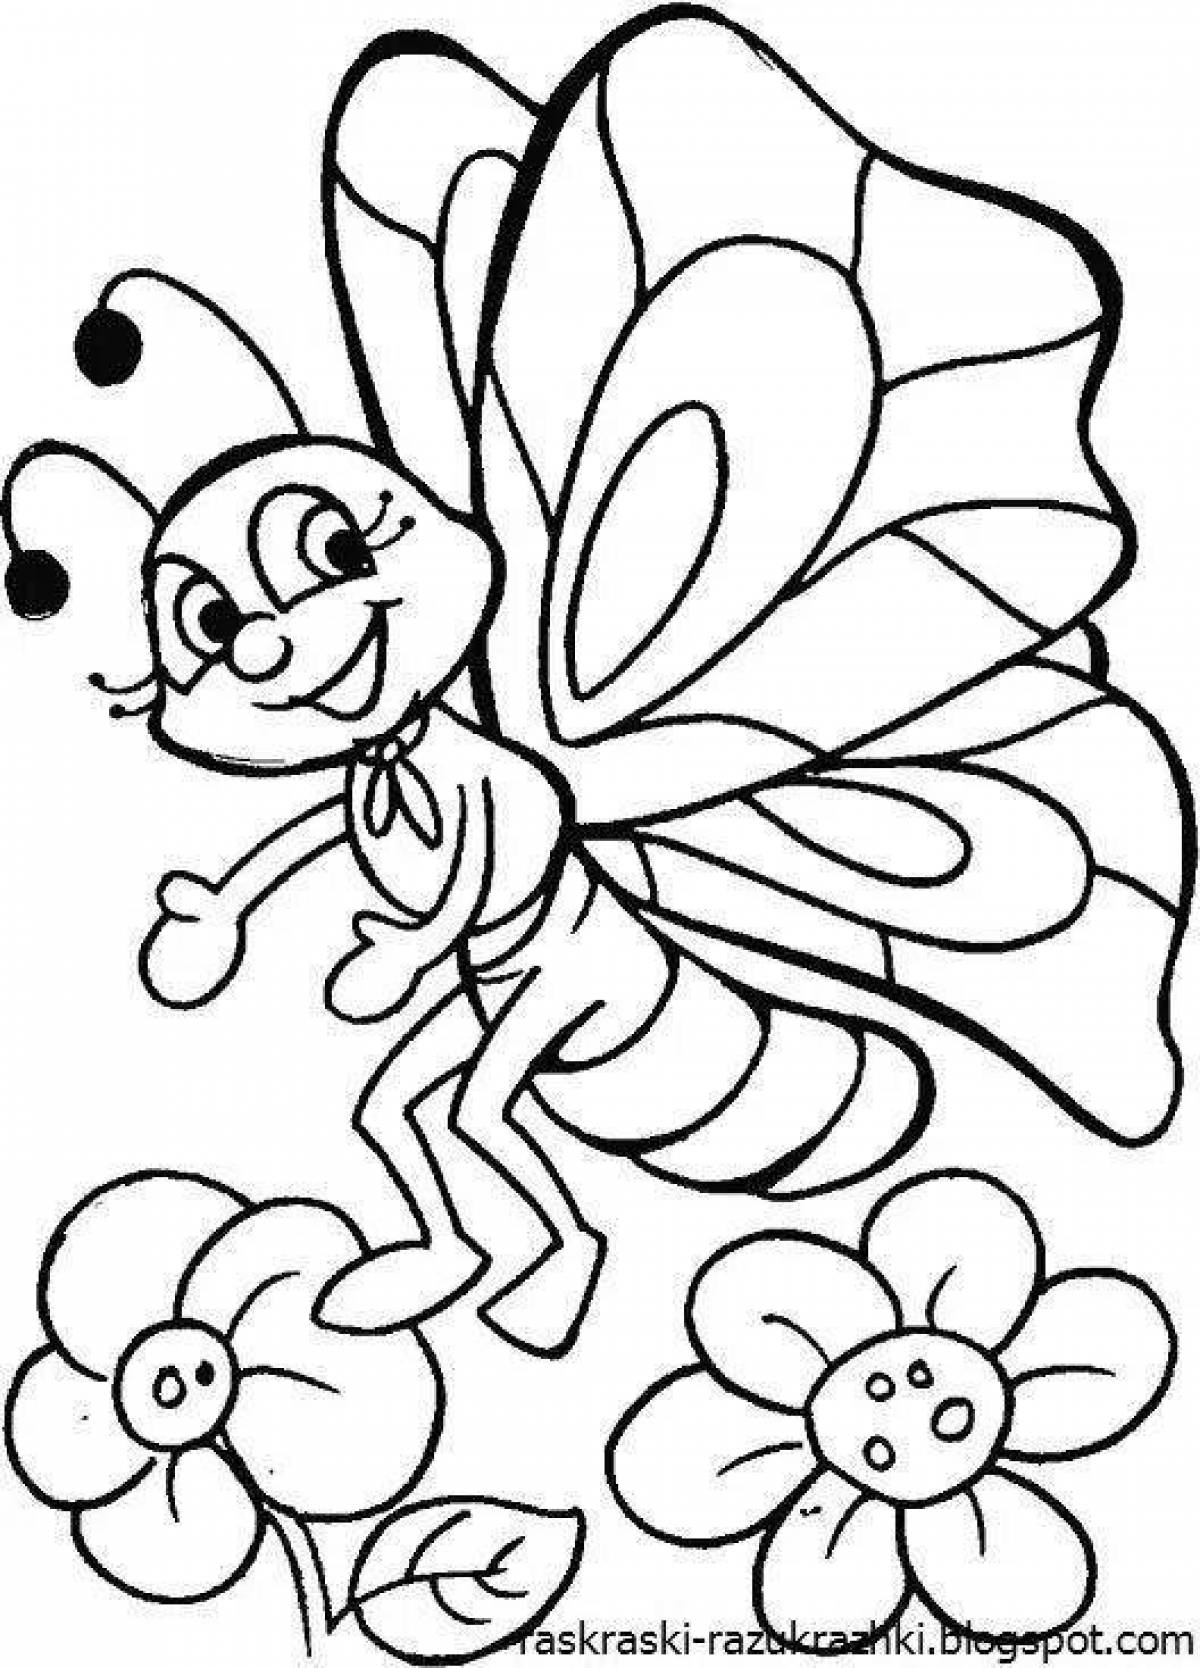 Раскраски насекомые для детей 5 6. Бабочка раскраска для детей. Раскраски длядля детей. Раскраски насекомые для детей 4-5 лет. Раскраска насекомые для малышей.